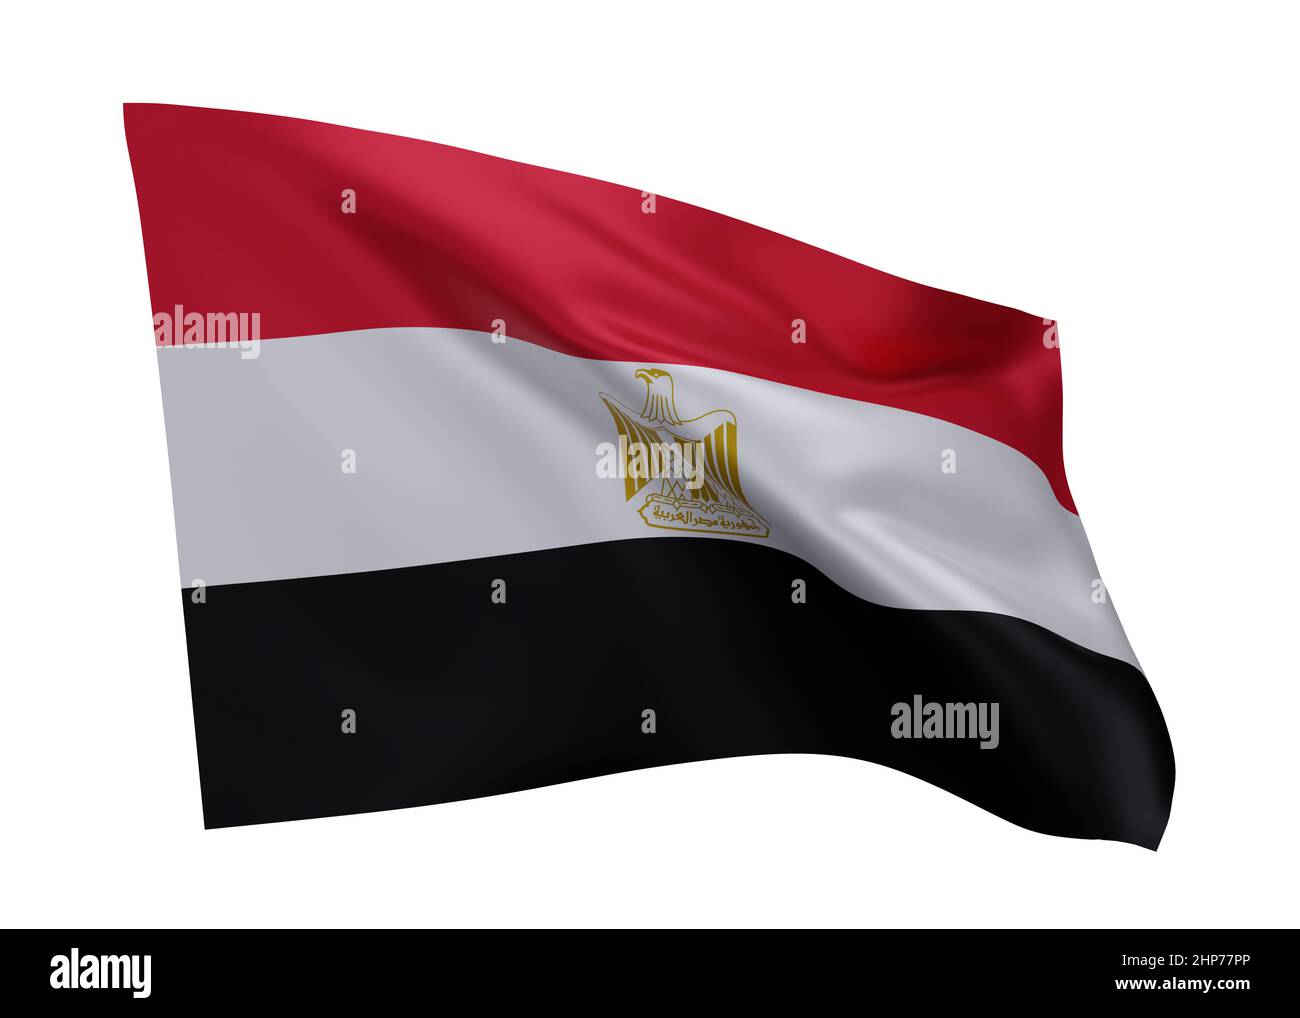 3d illustration flag of Egypt. Egyptian high resolution flag isolated against white background. 3d rendering Stock Photo